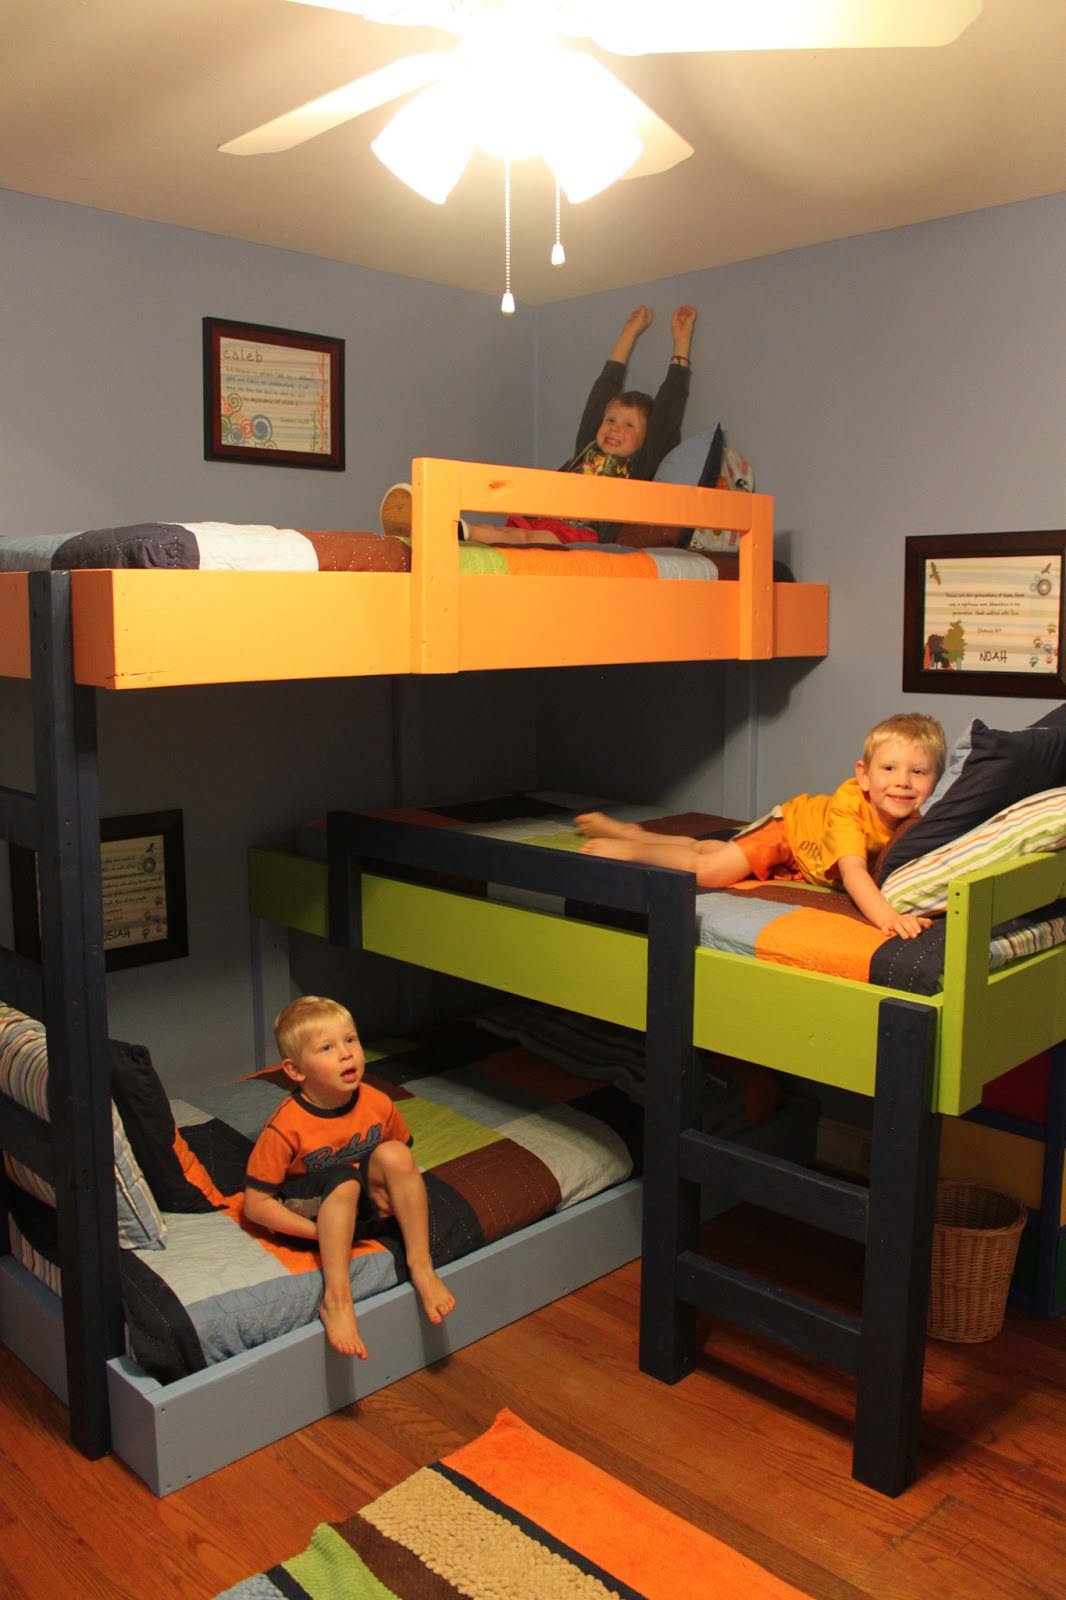 Cameretta condivisa da 3 fratelli con il letto a castello realizzato con il fai da te - design semplice e funzionale